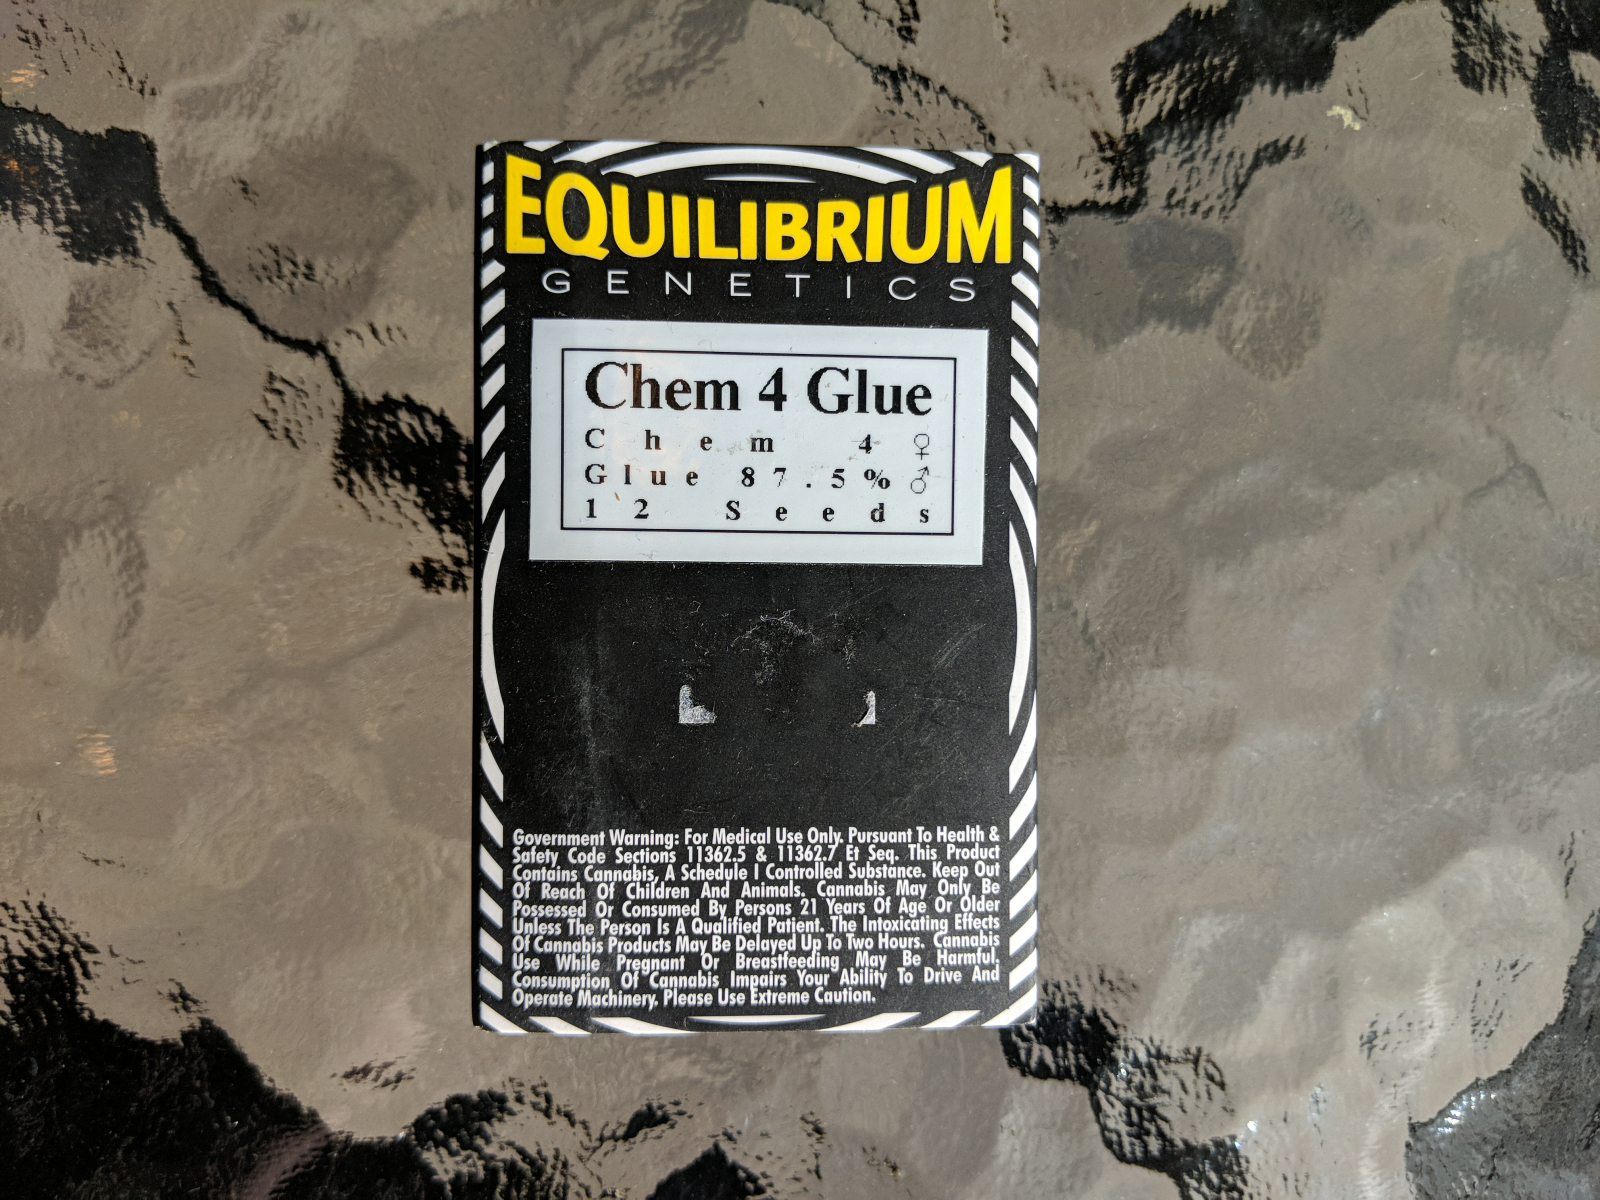 Equilibrium genetics chem 4 glue regular seeds